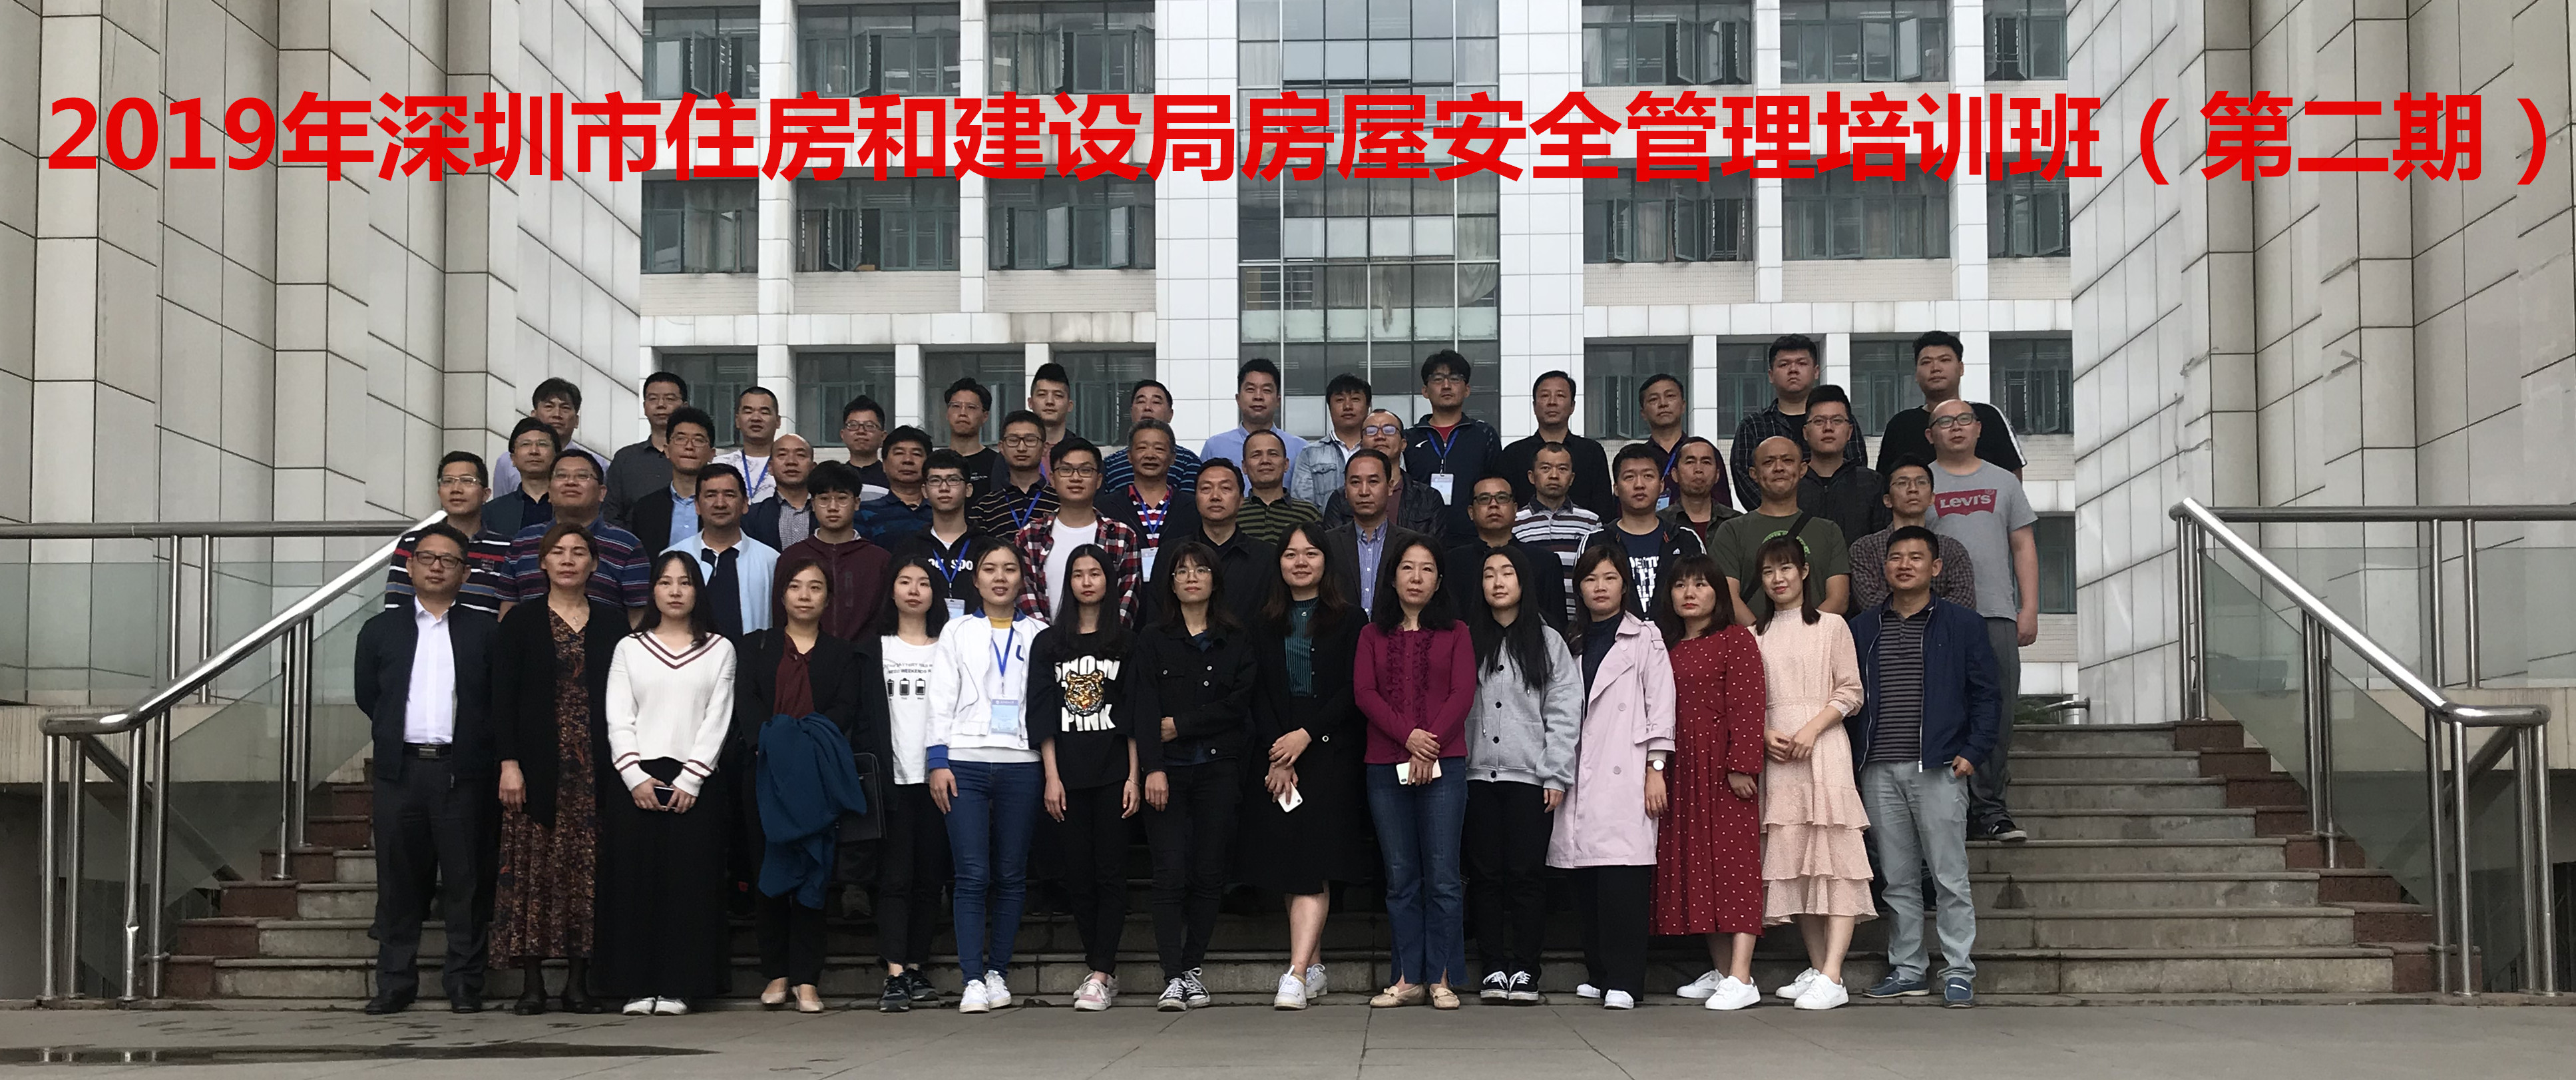 2019年第二期深圳市房屋安全管理培训班合影